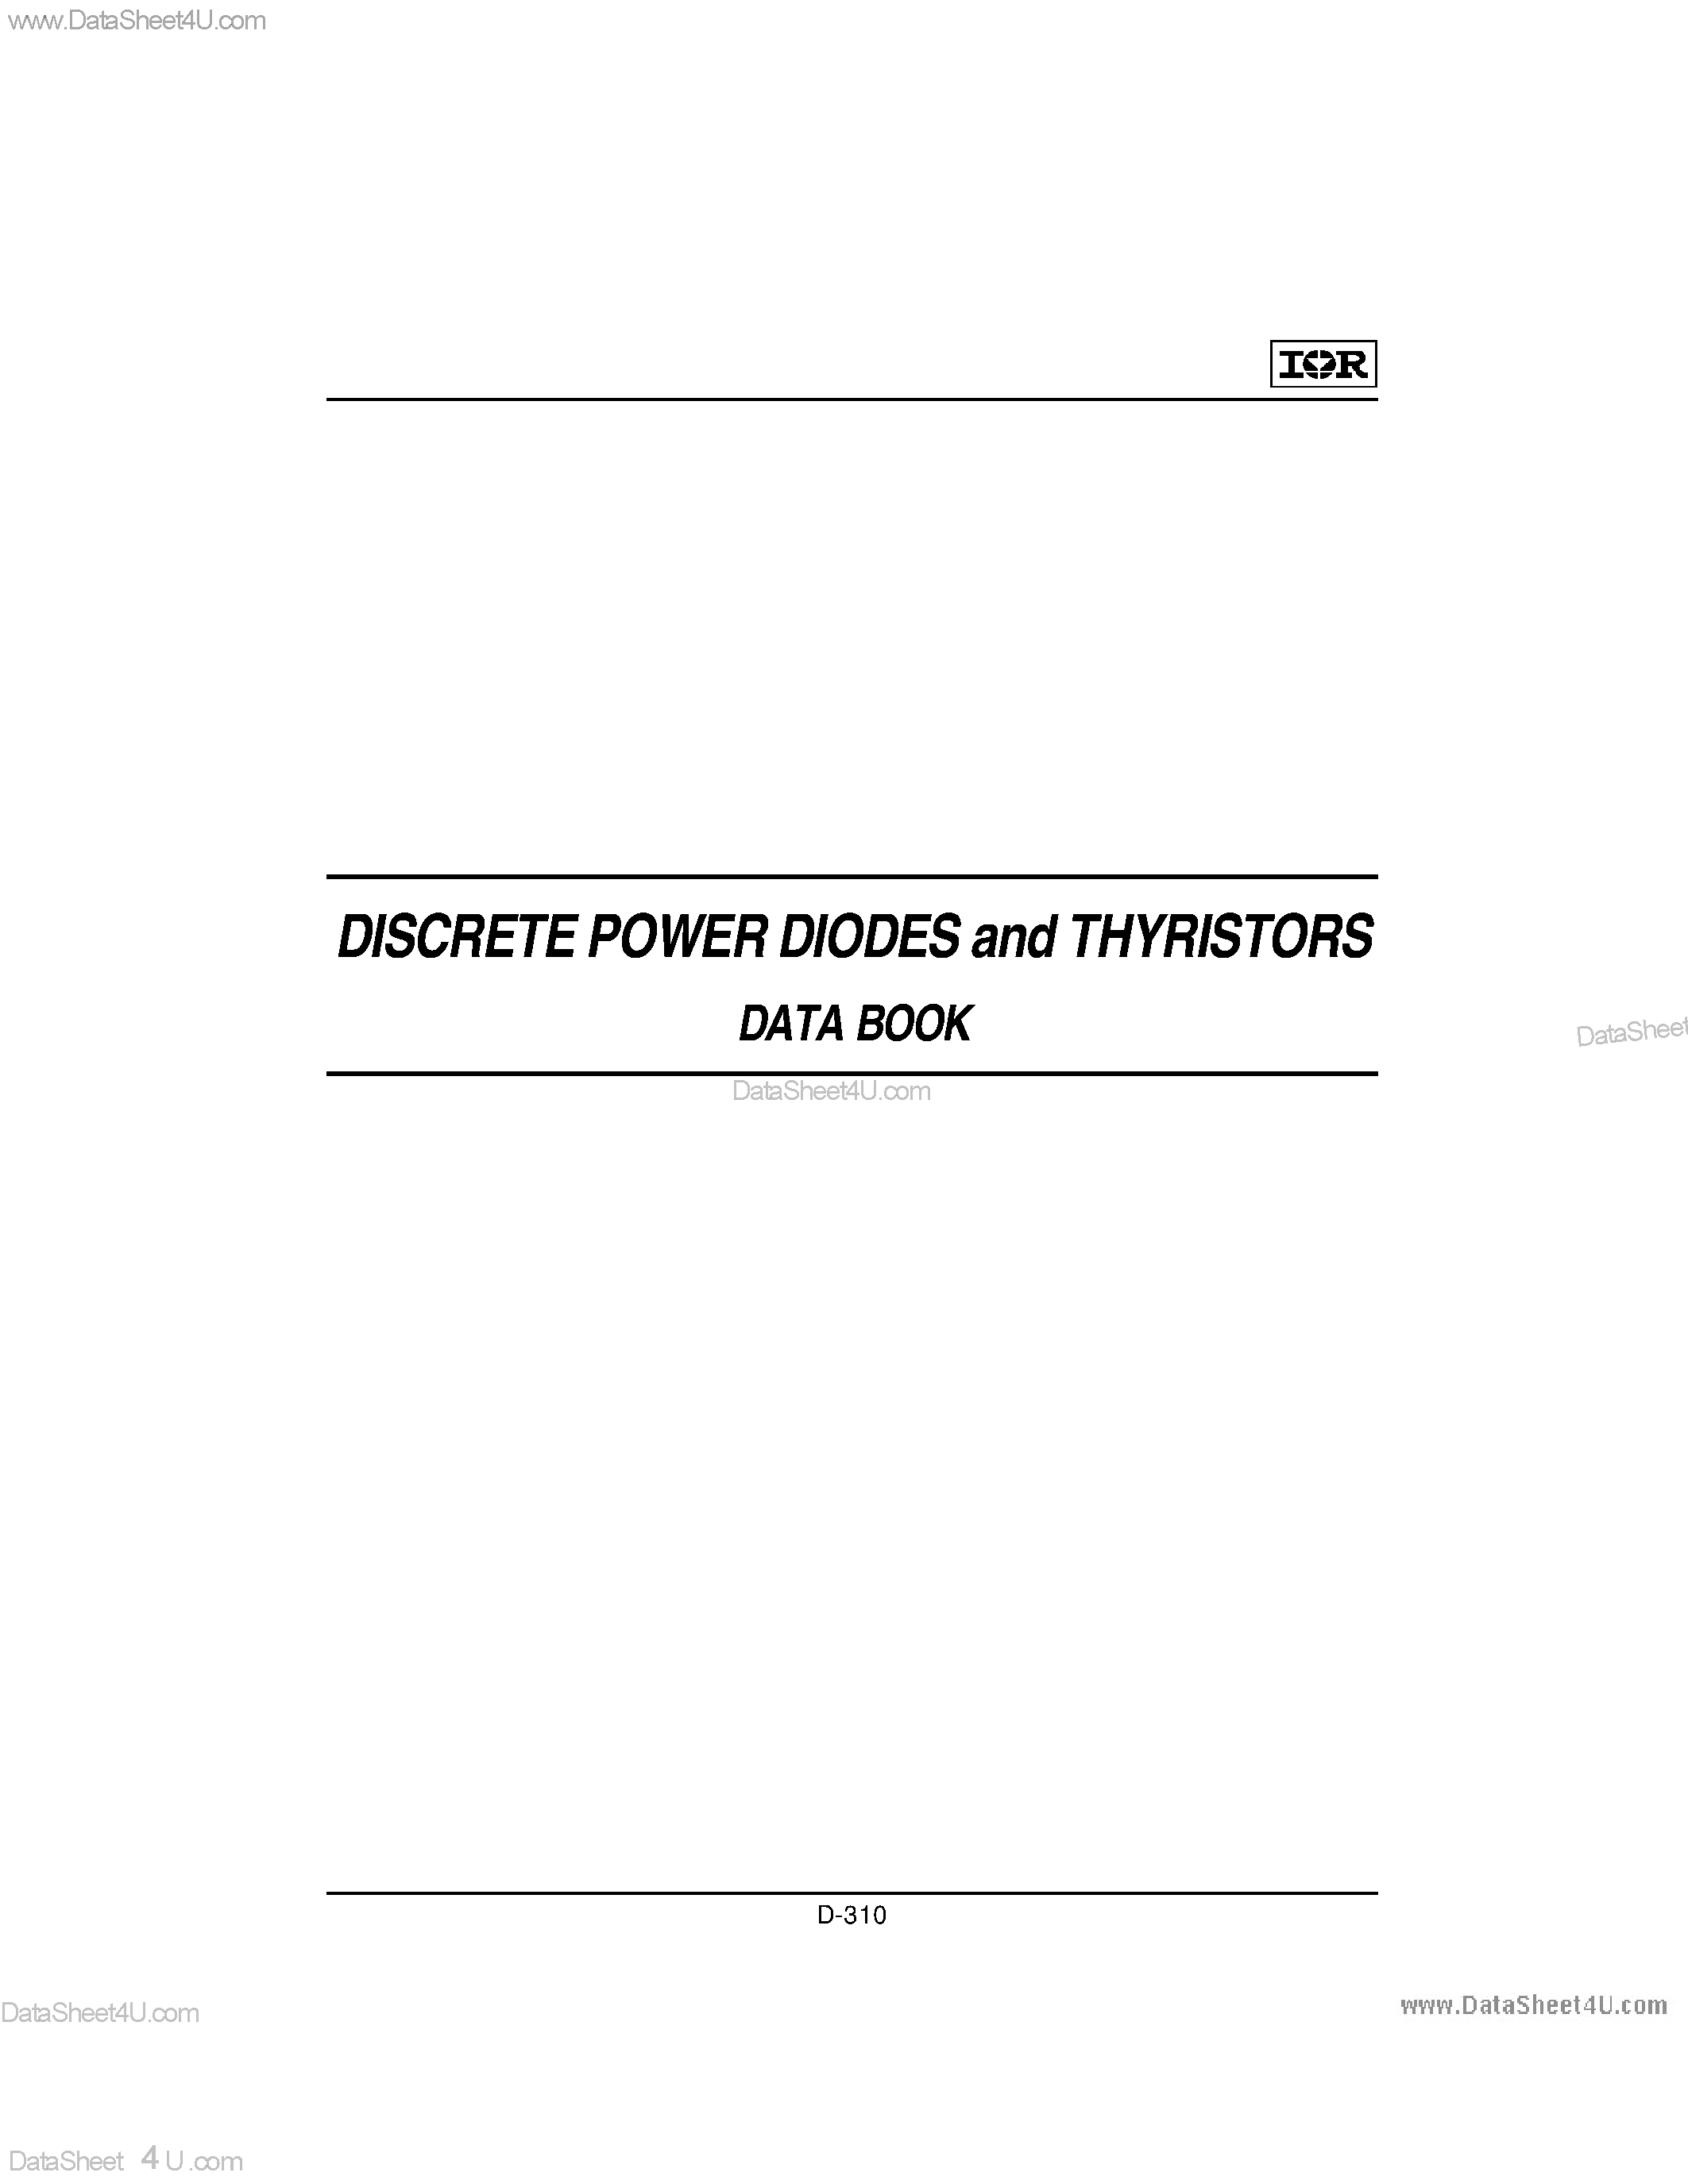 Datasheet ST300C - PHASE CONTROL THYRISTORS Hockey Puk Version page 1